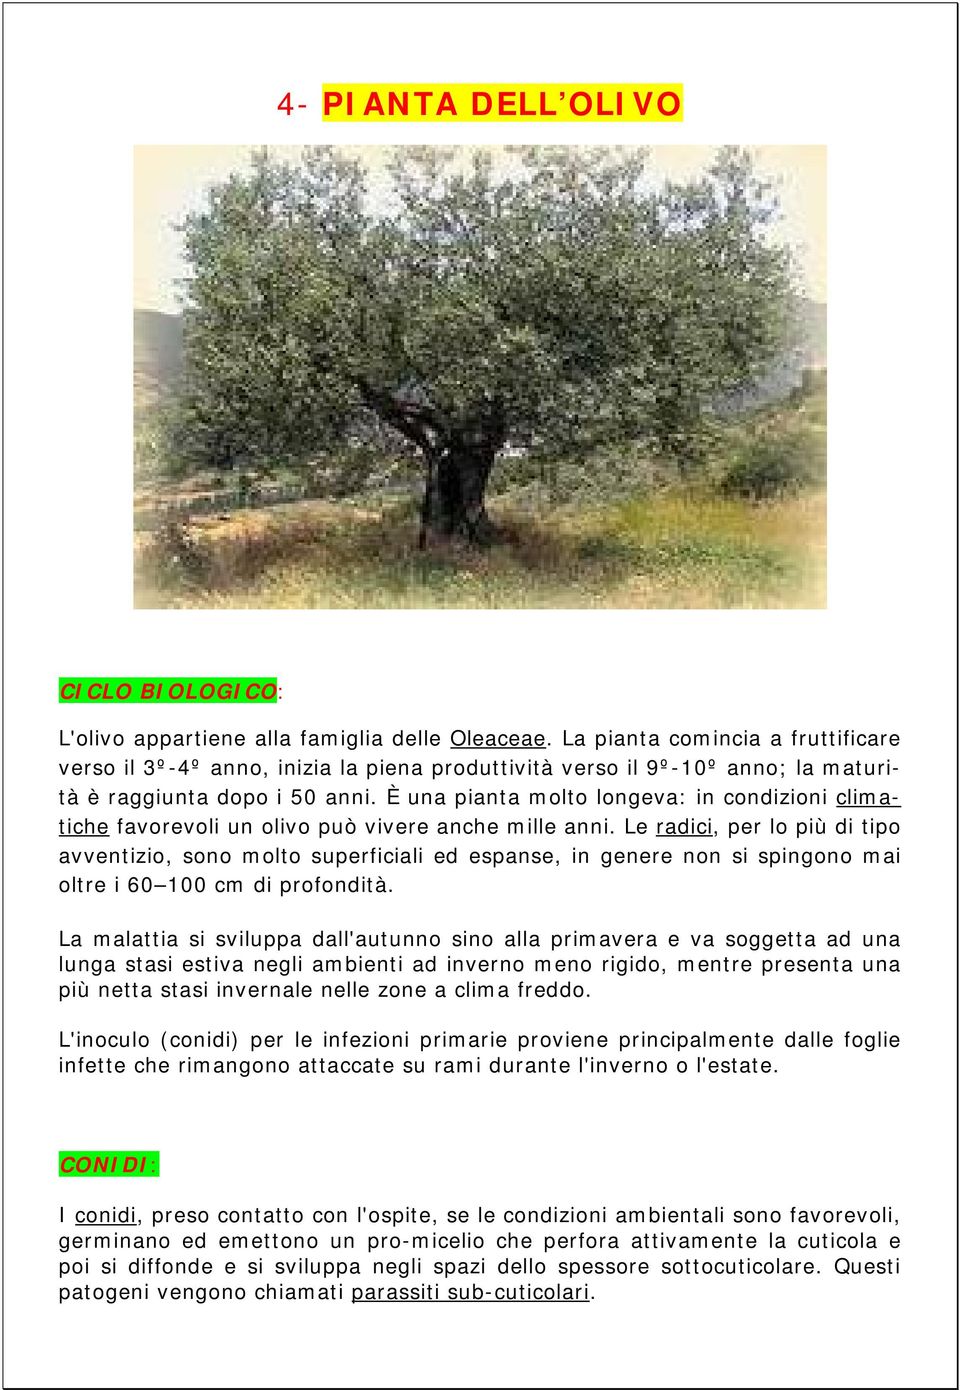 È una pianta molto longeva: in condizioni climatiche favorevoli un olivo può vivere anche mille anni.